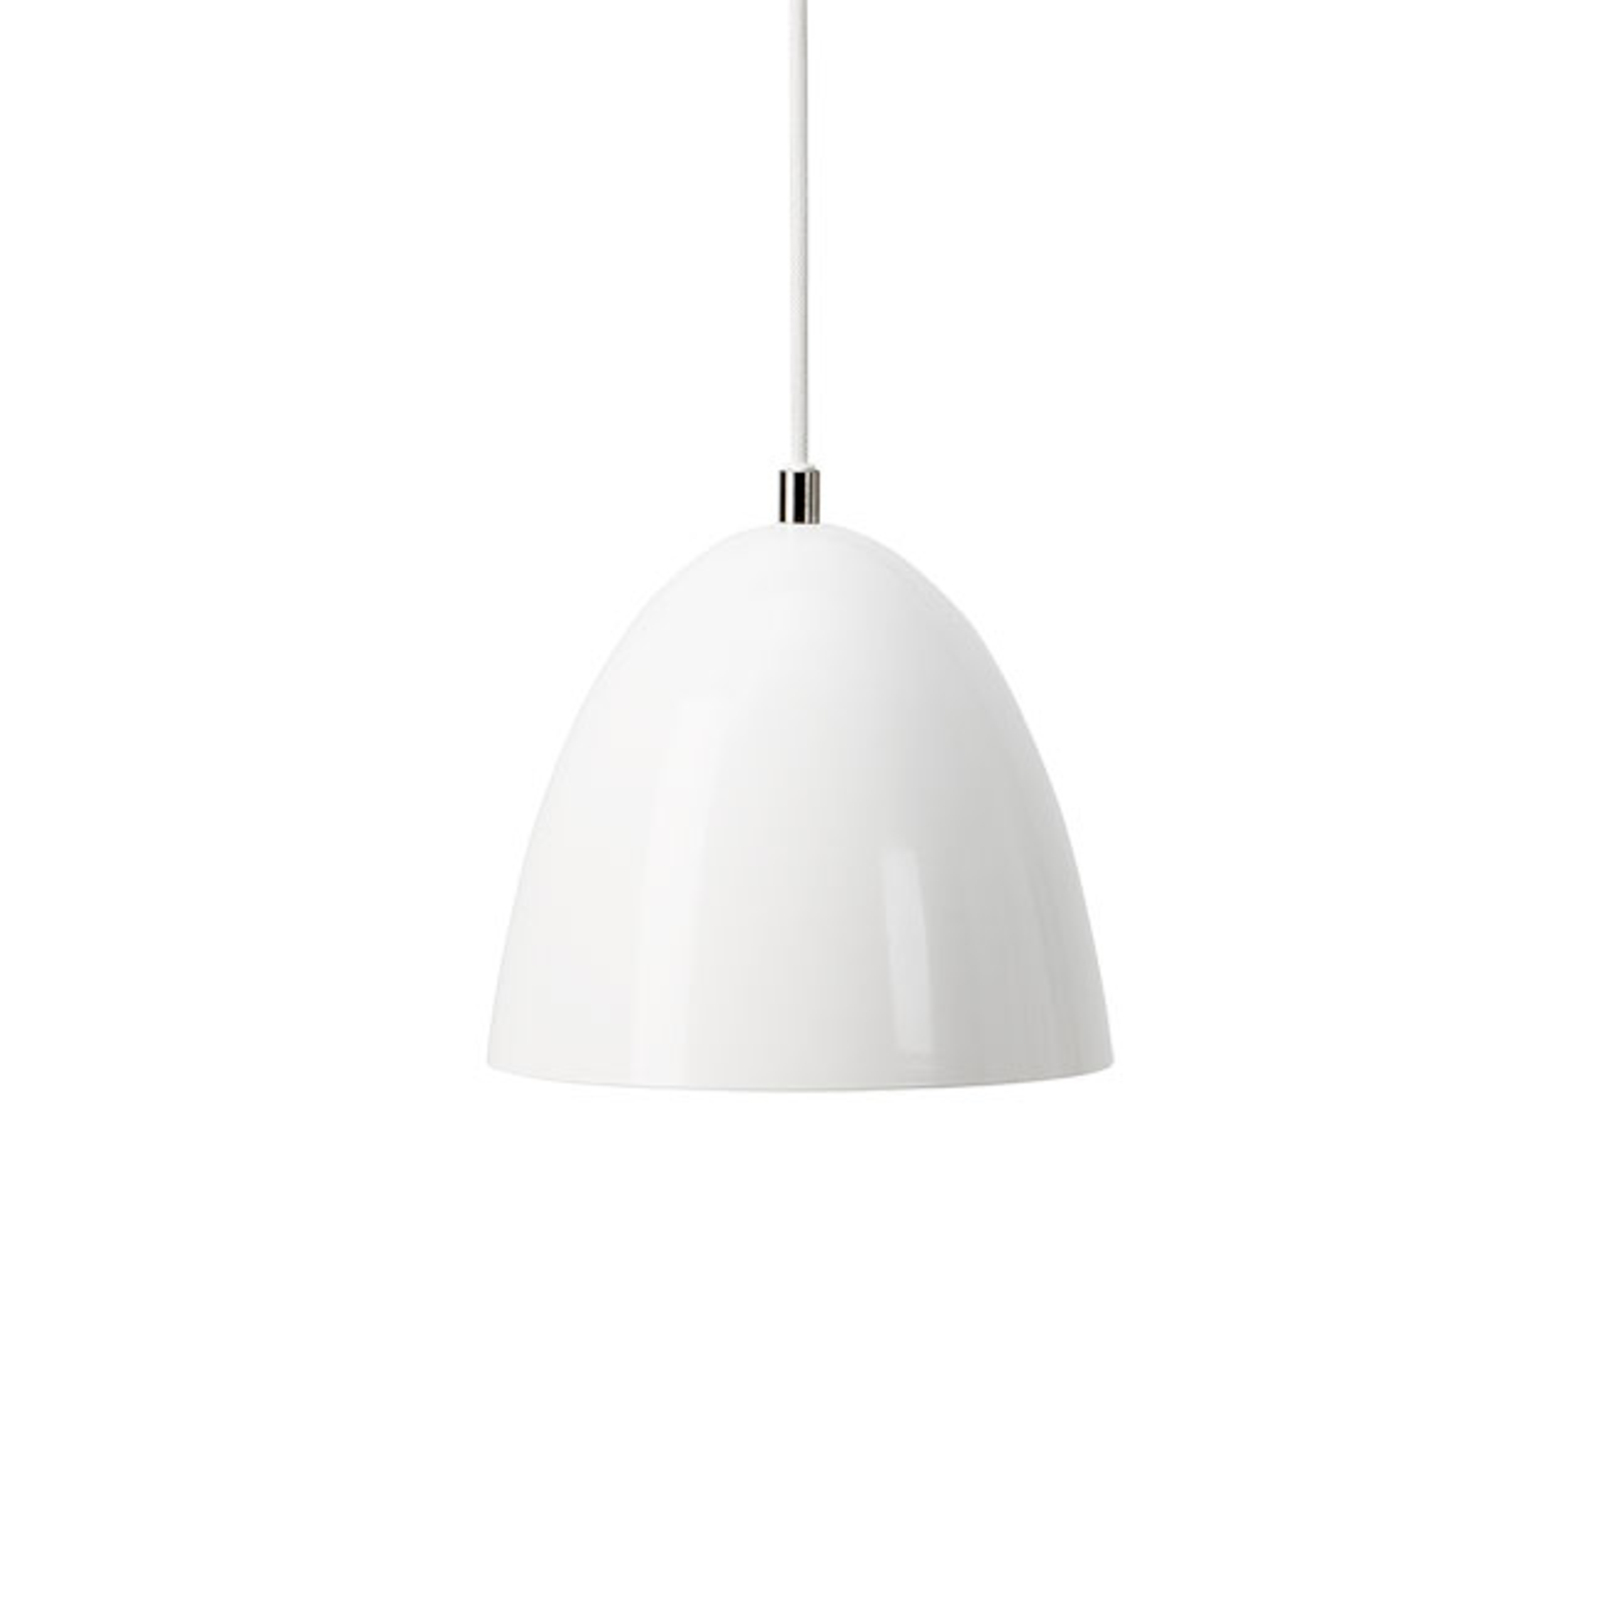 Lampa wisząca LED Eas, Ø 24 cm, 3 000 K, biała